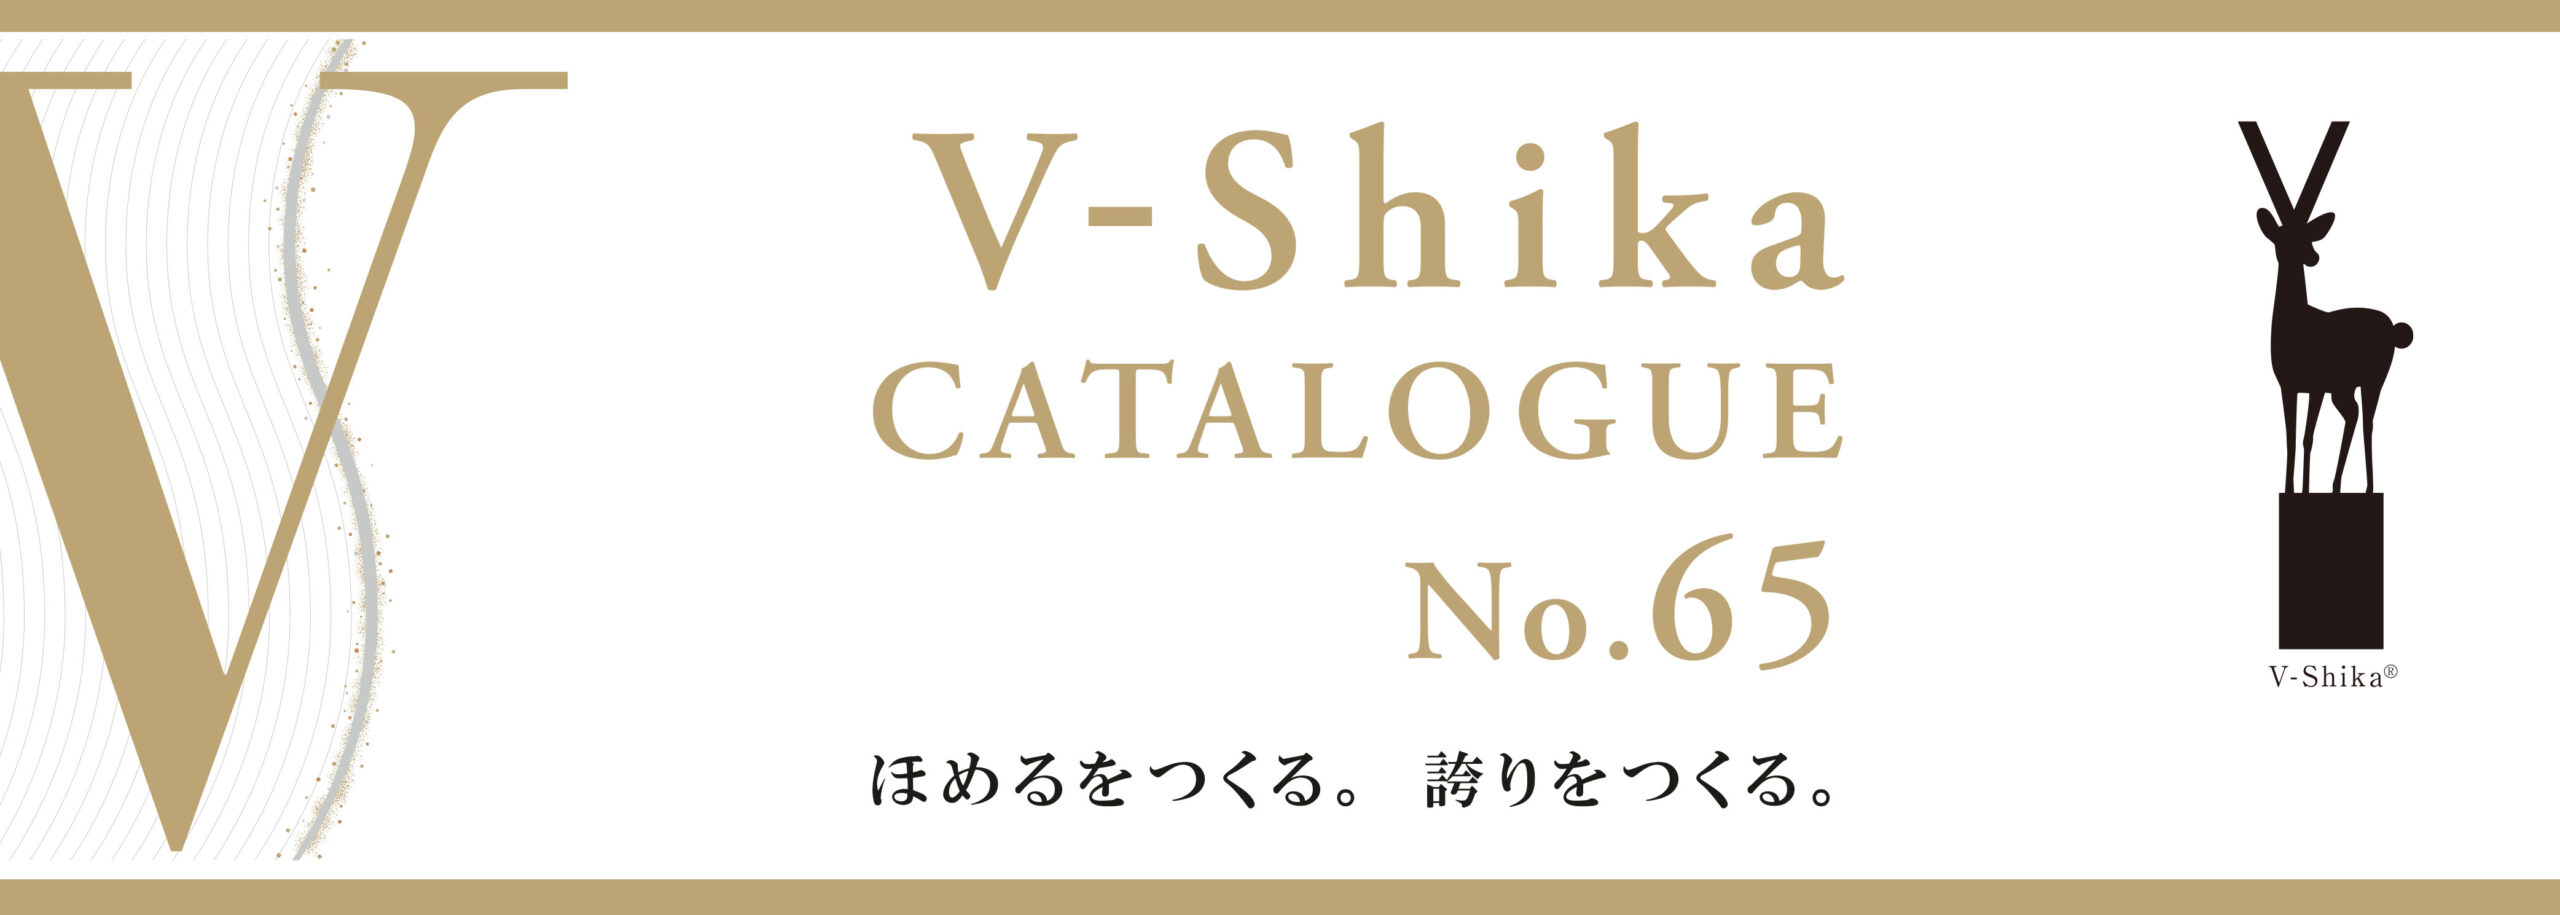 V-Shika CATALOGUE No.65 ほめるをつくる。誇りをつくる。